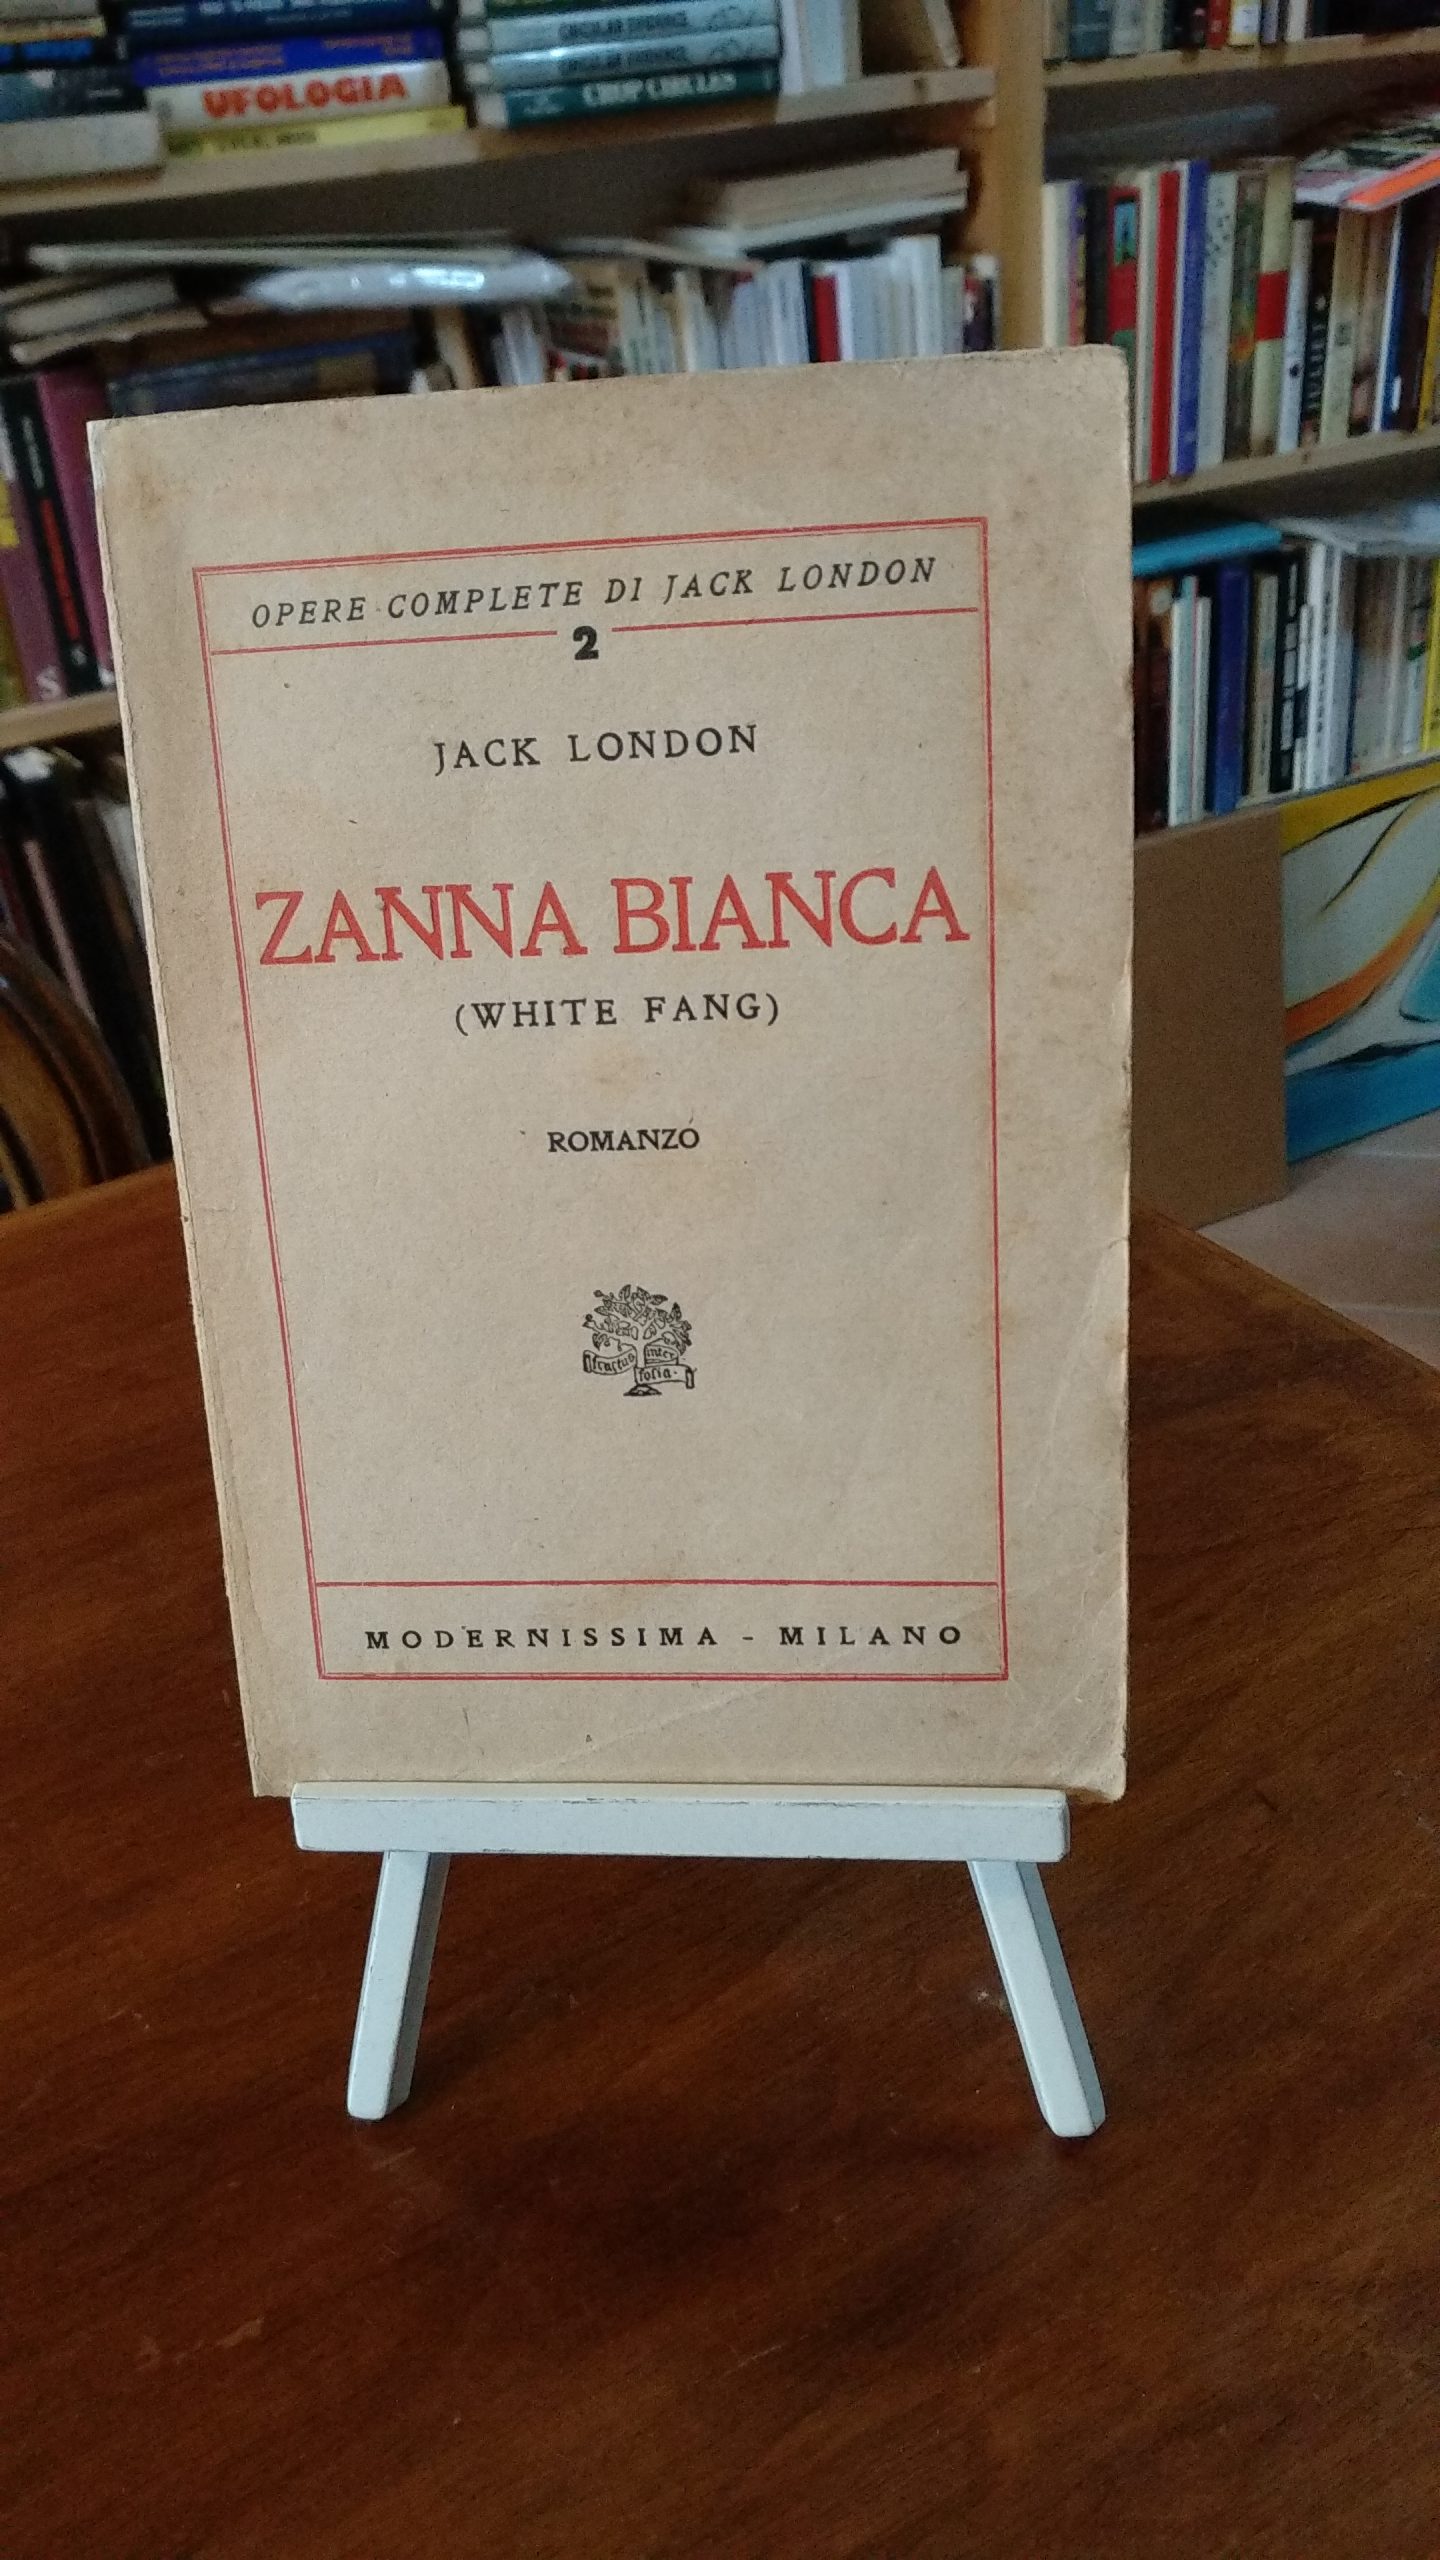 Zanna bianca (White Fang): romanzo, di Jack London (Milano, Modernissima, 1925). Prima edizione italiana 60€